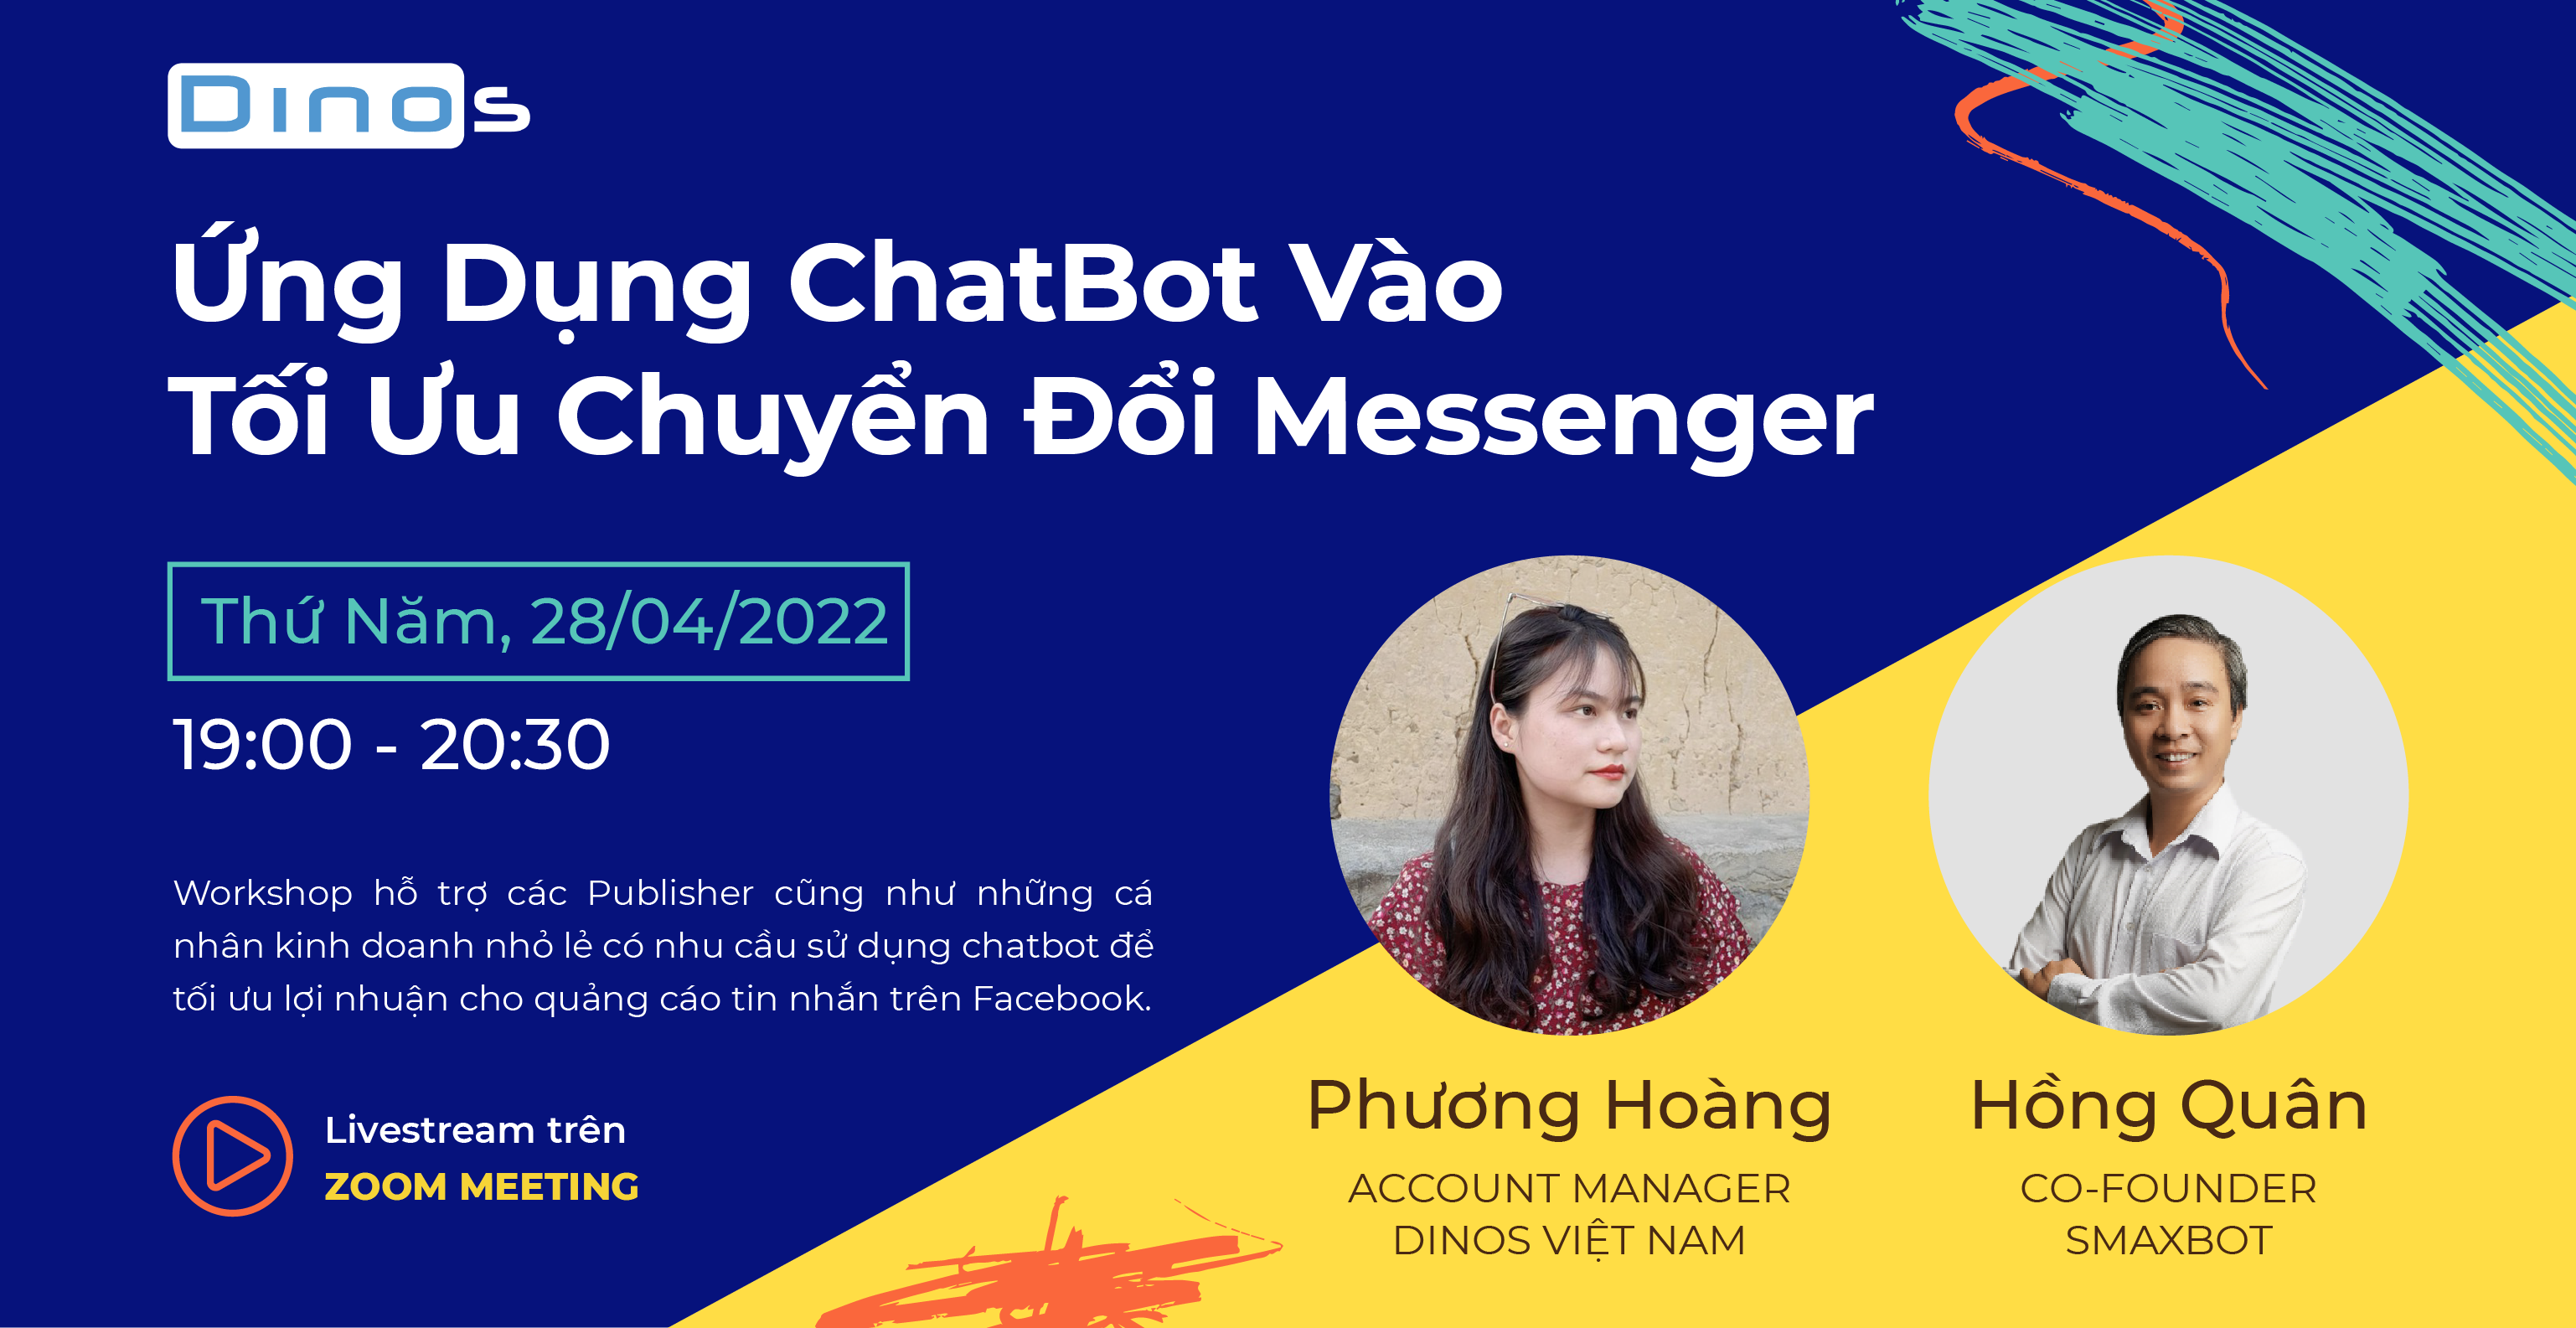 [WORKSHOP] Ứng dụng ChatBot để tối ưu chuyển đổi từ Messenger